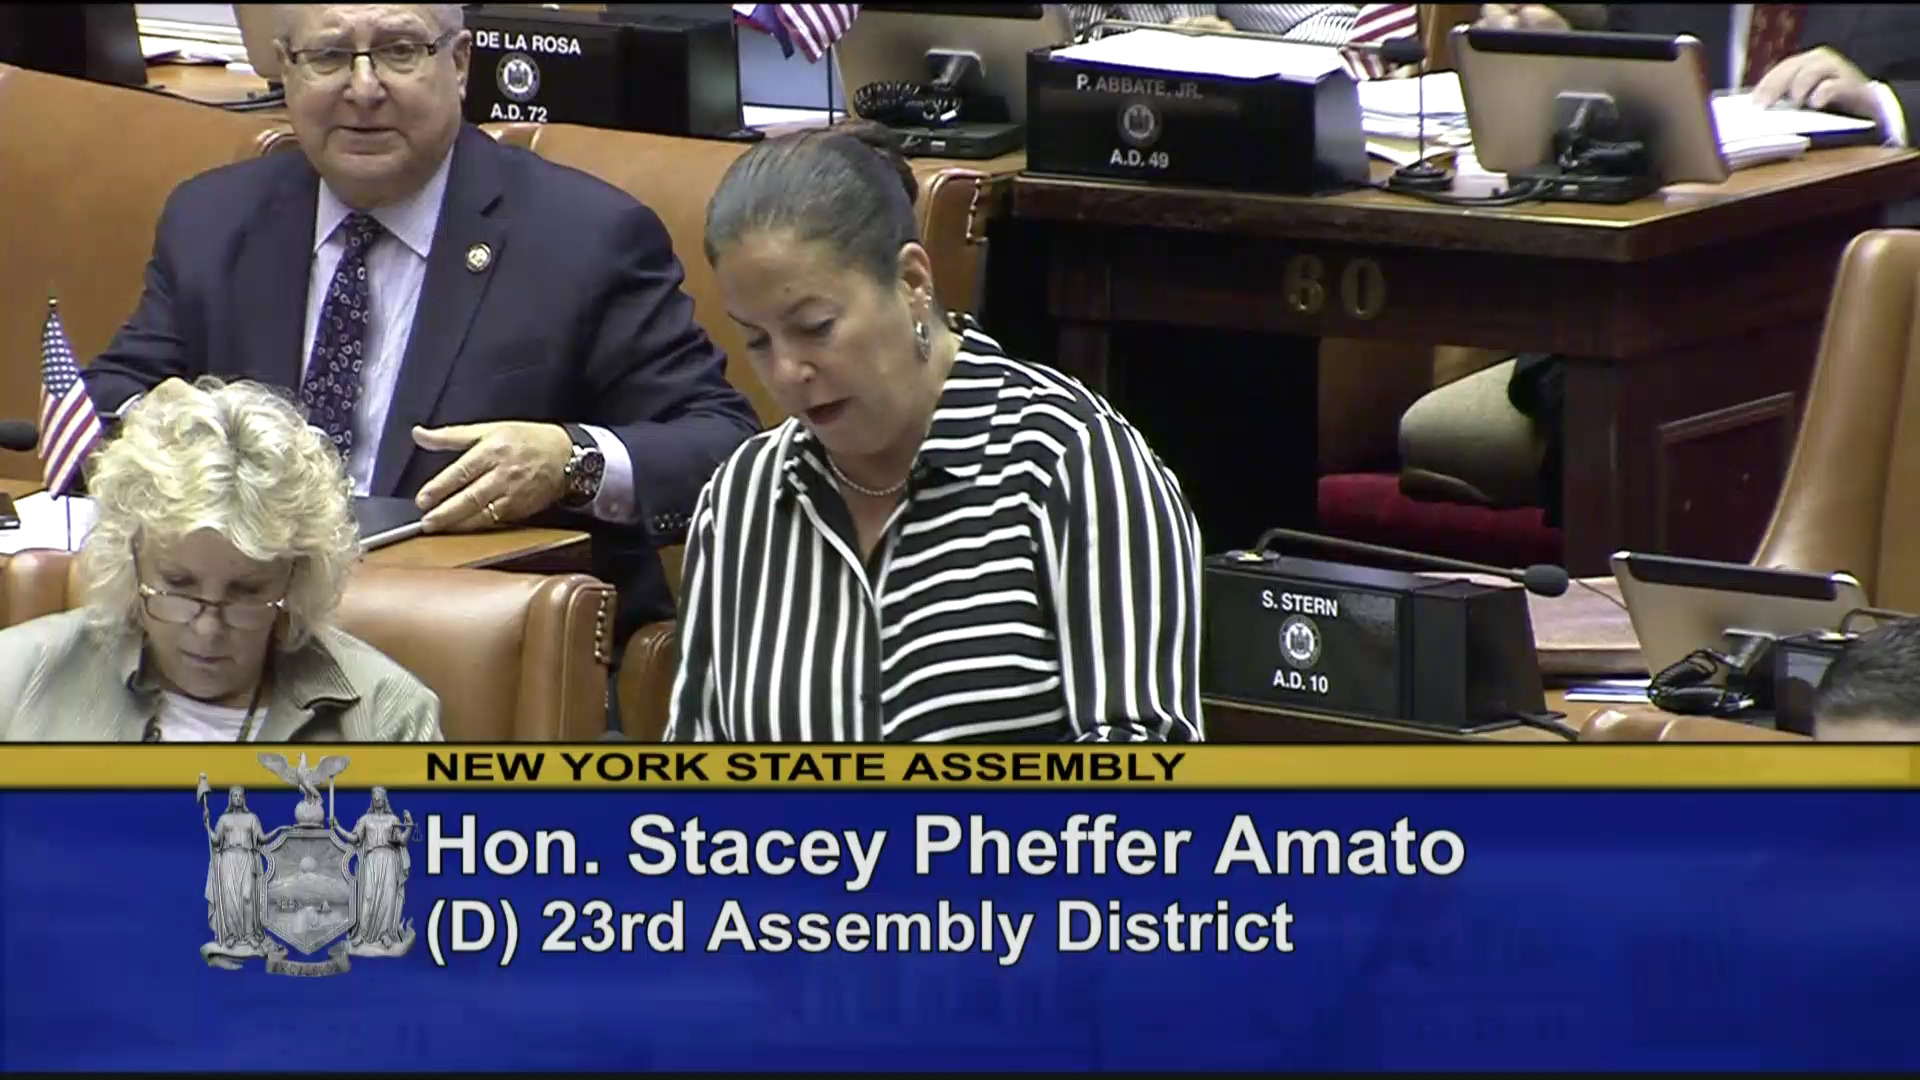 Assemblywoman Pheffer Amato Introduces Ricky Byrd